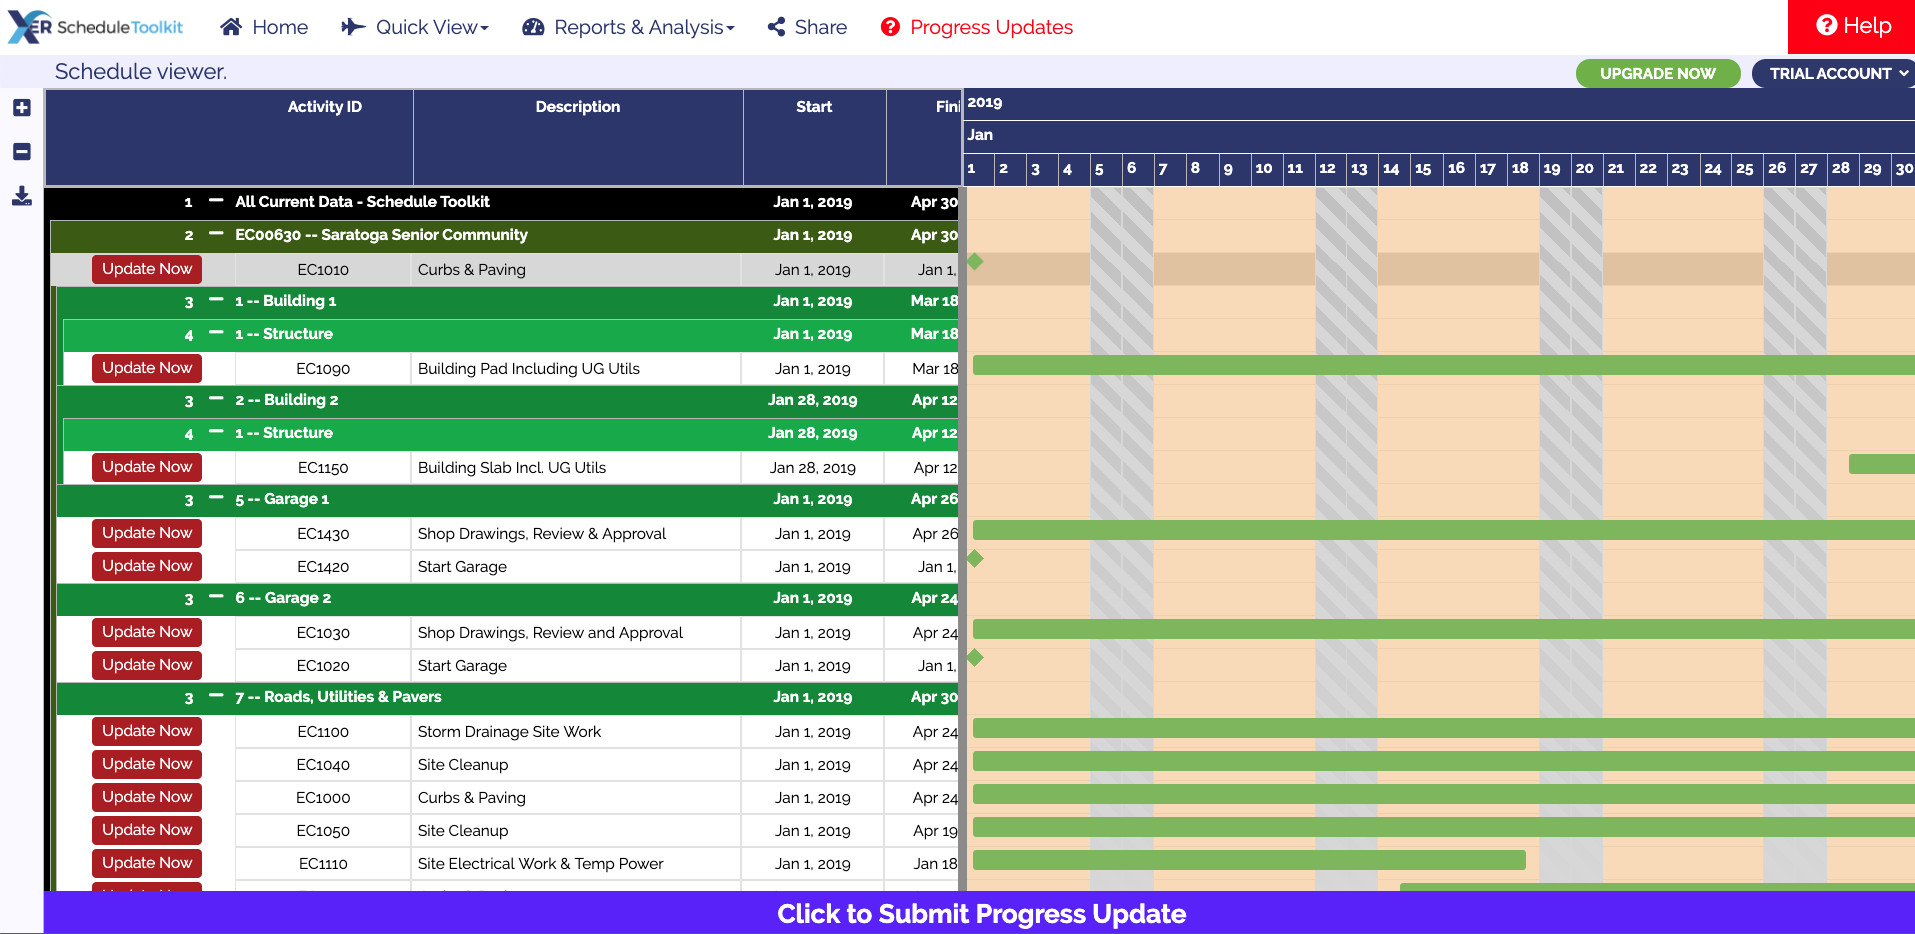 Features - XER Schedule Toolkit